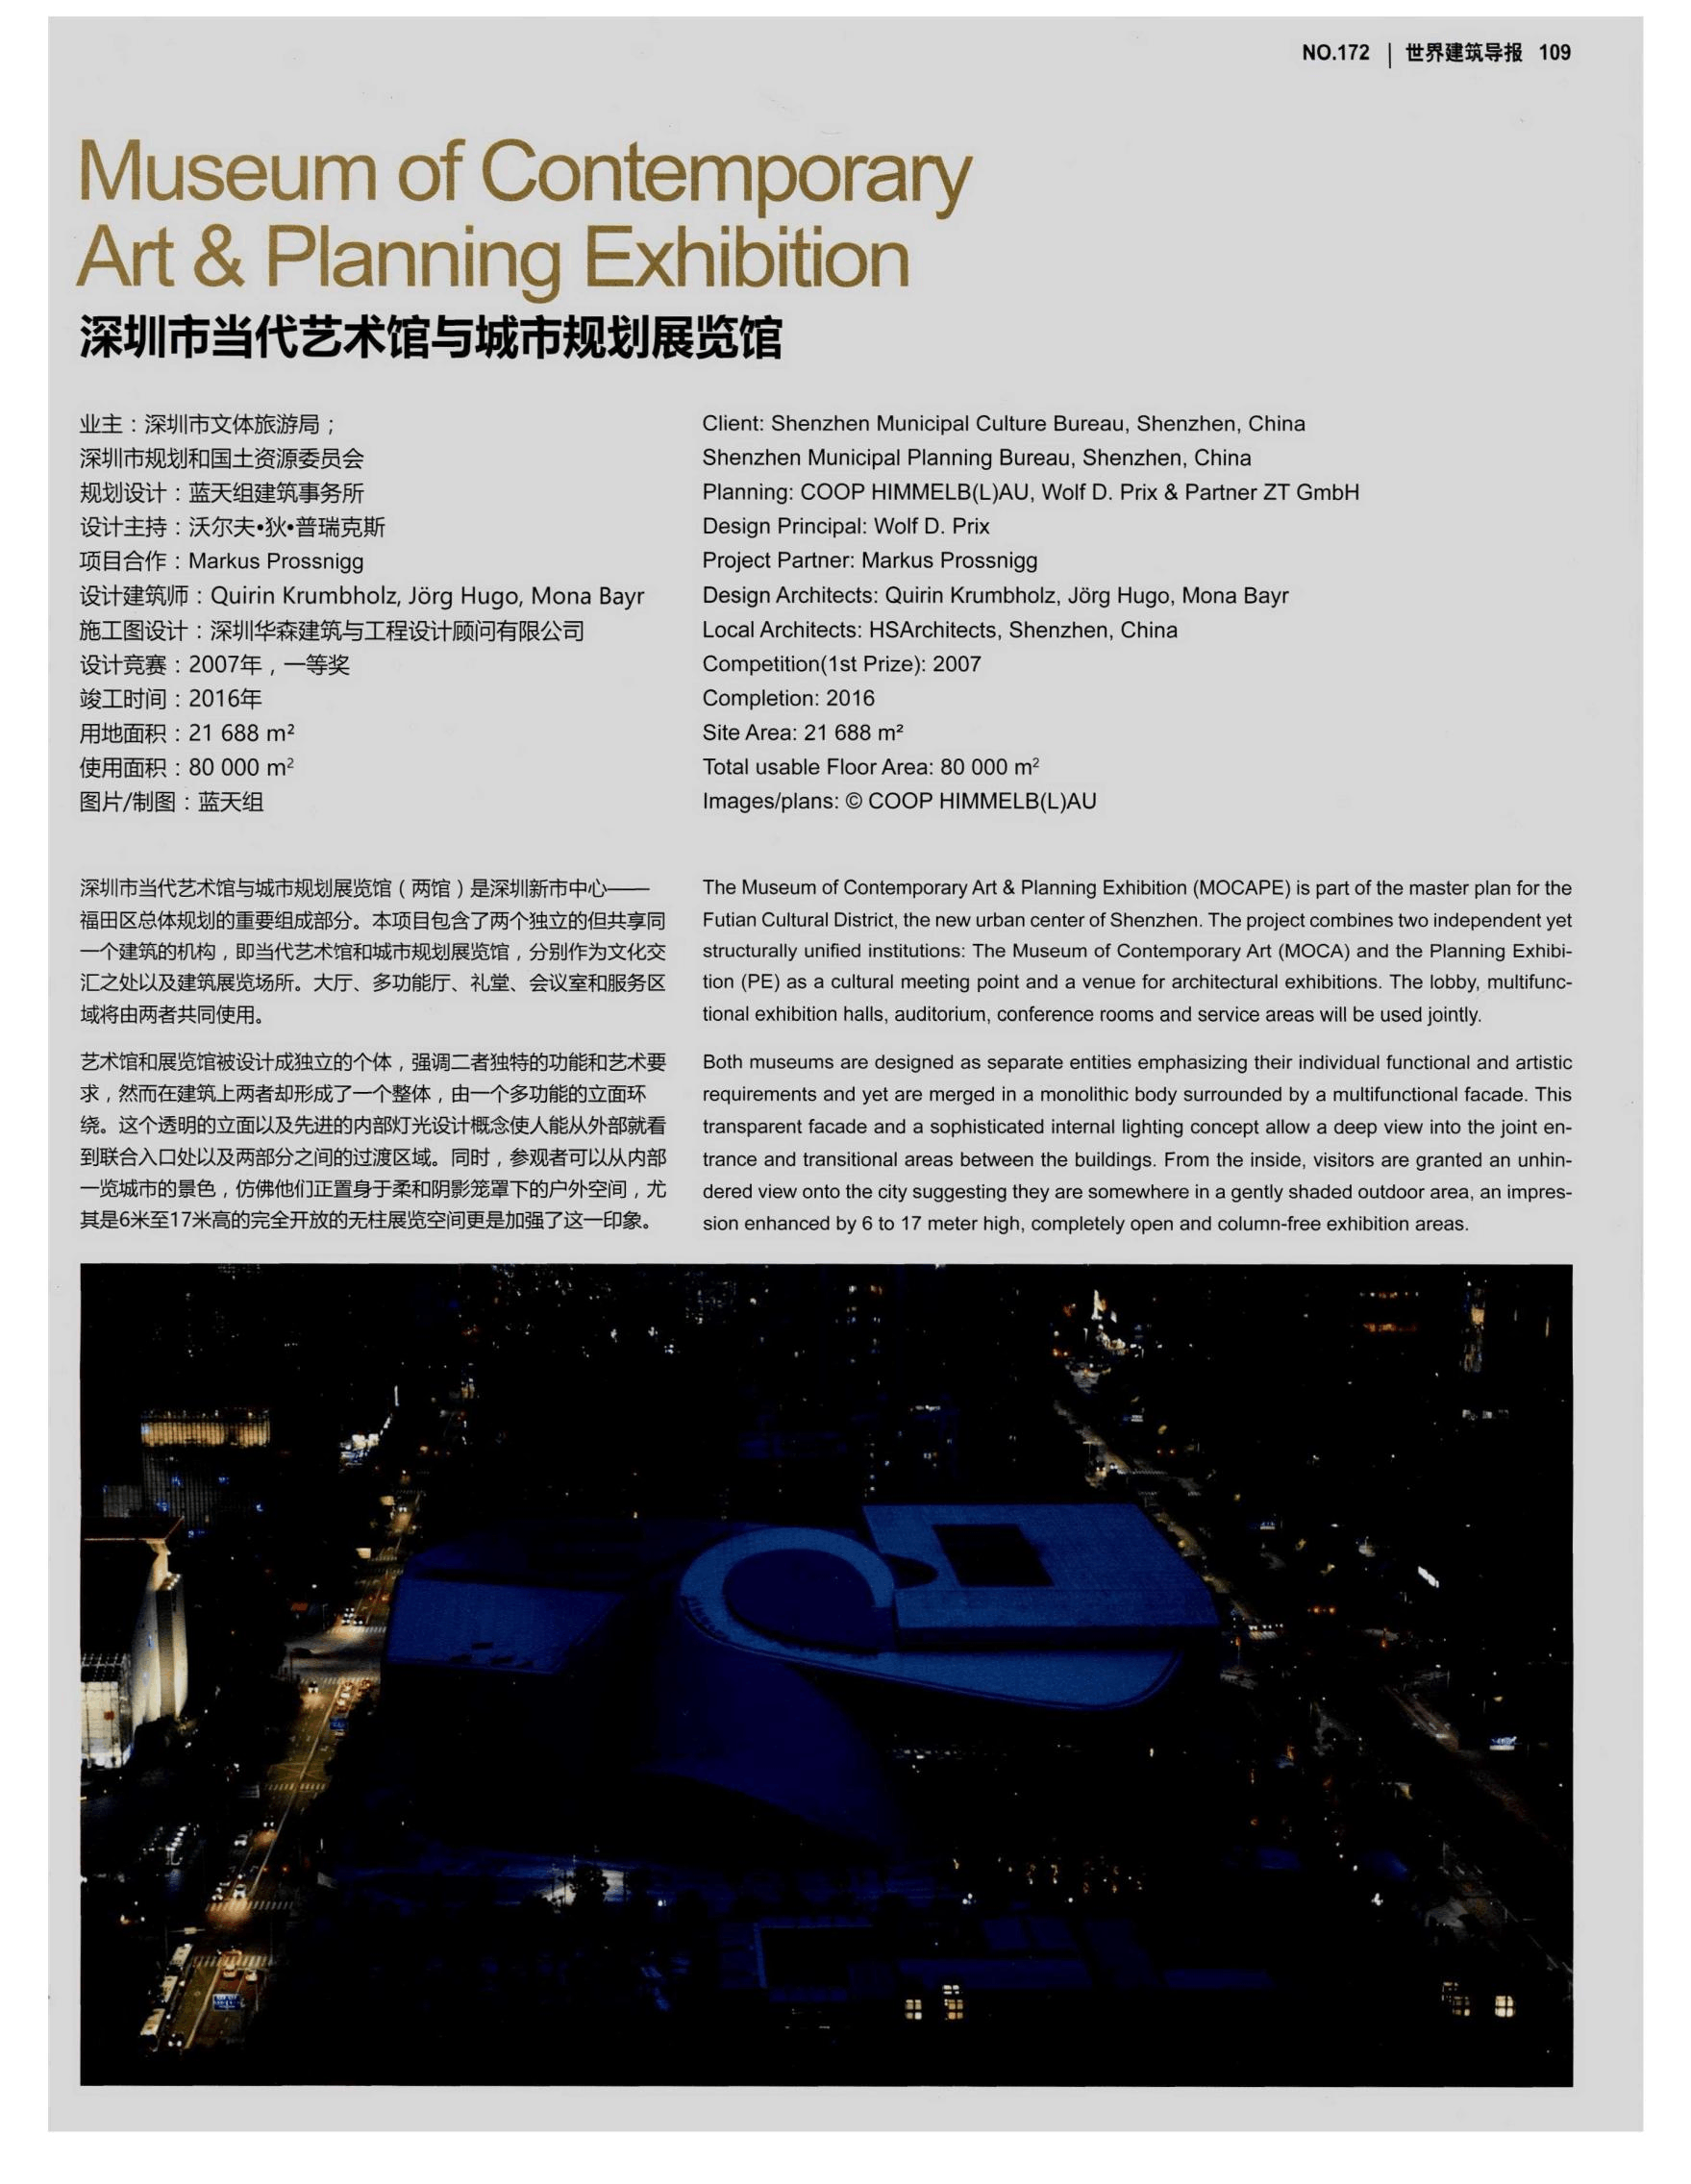 深圳市当代艺术馆与城市规划展览馆